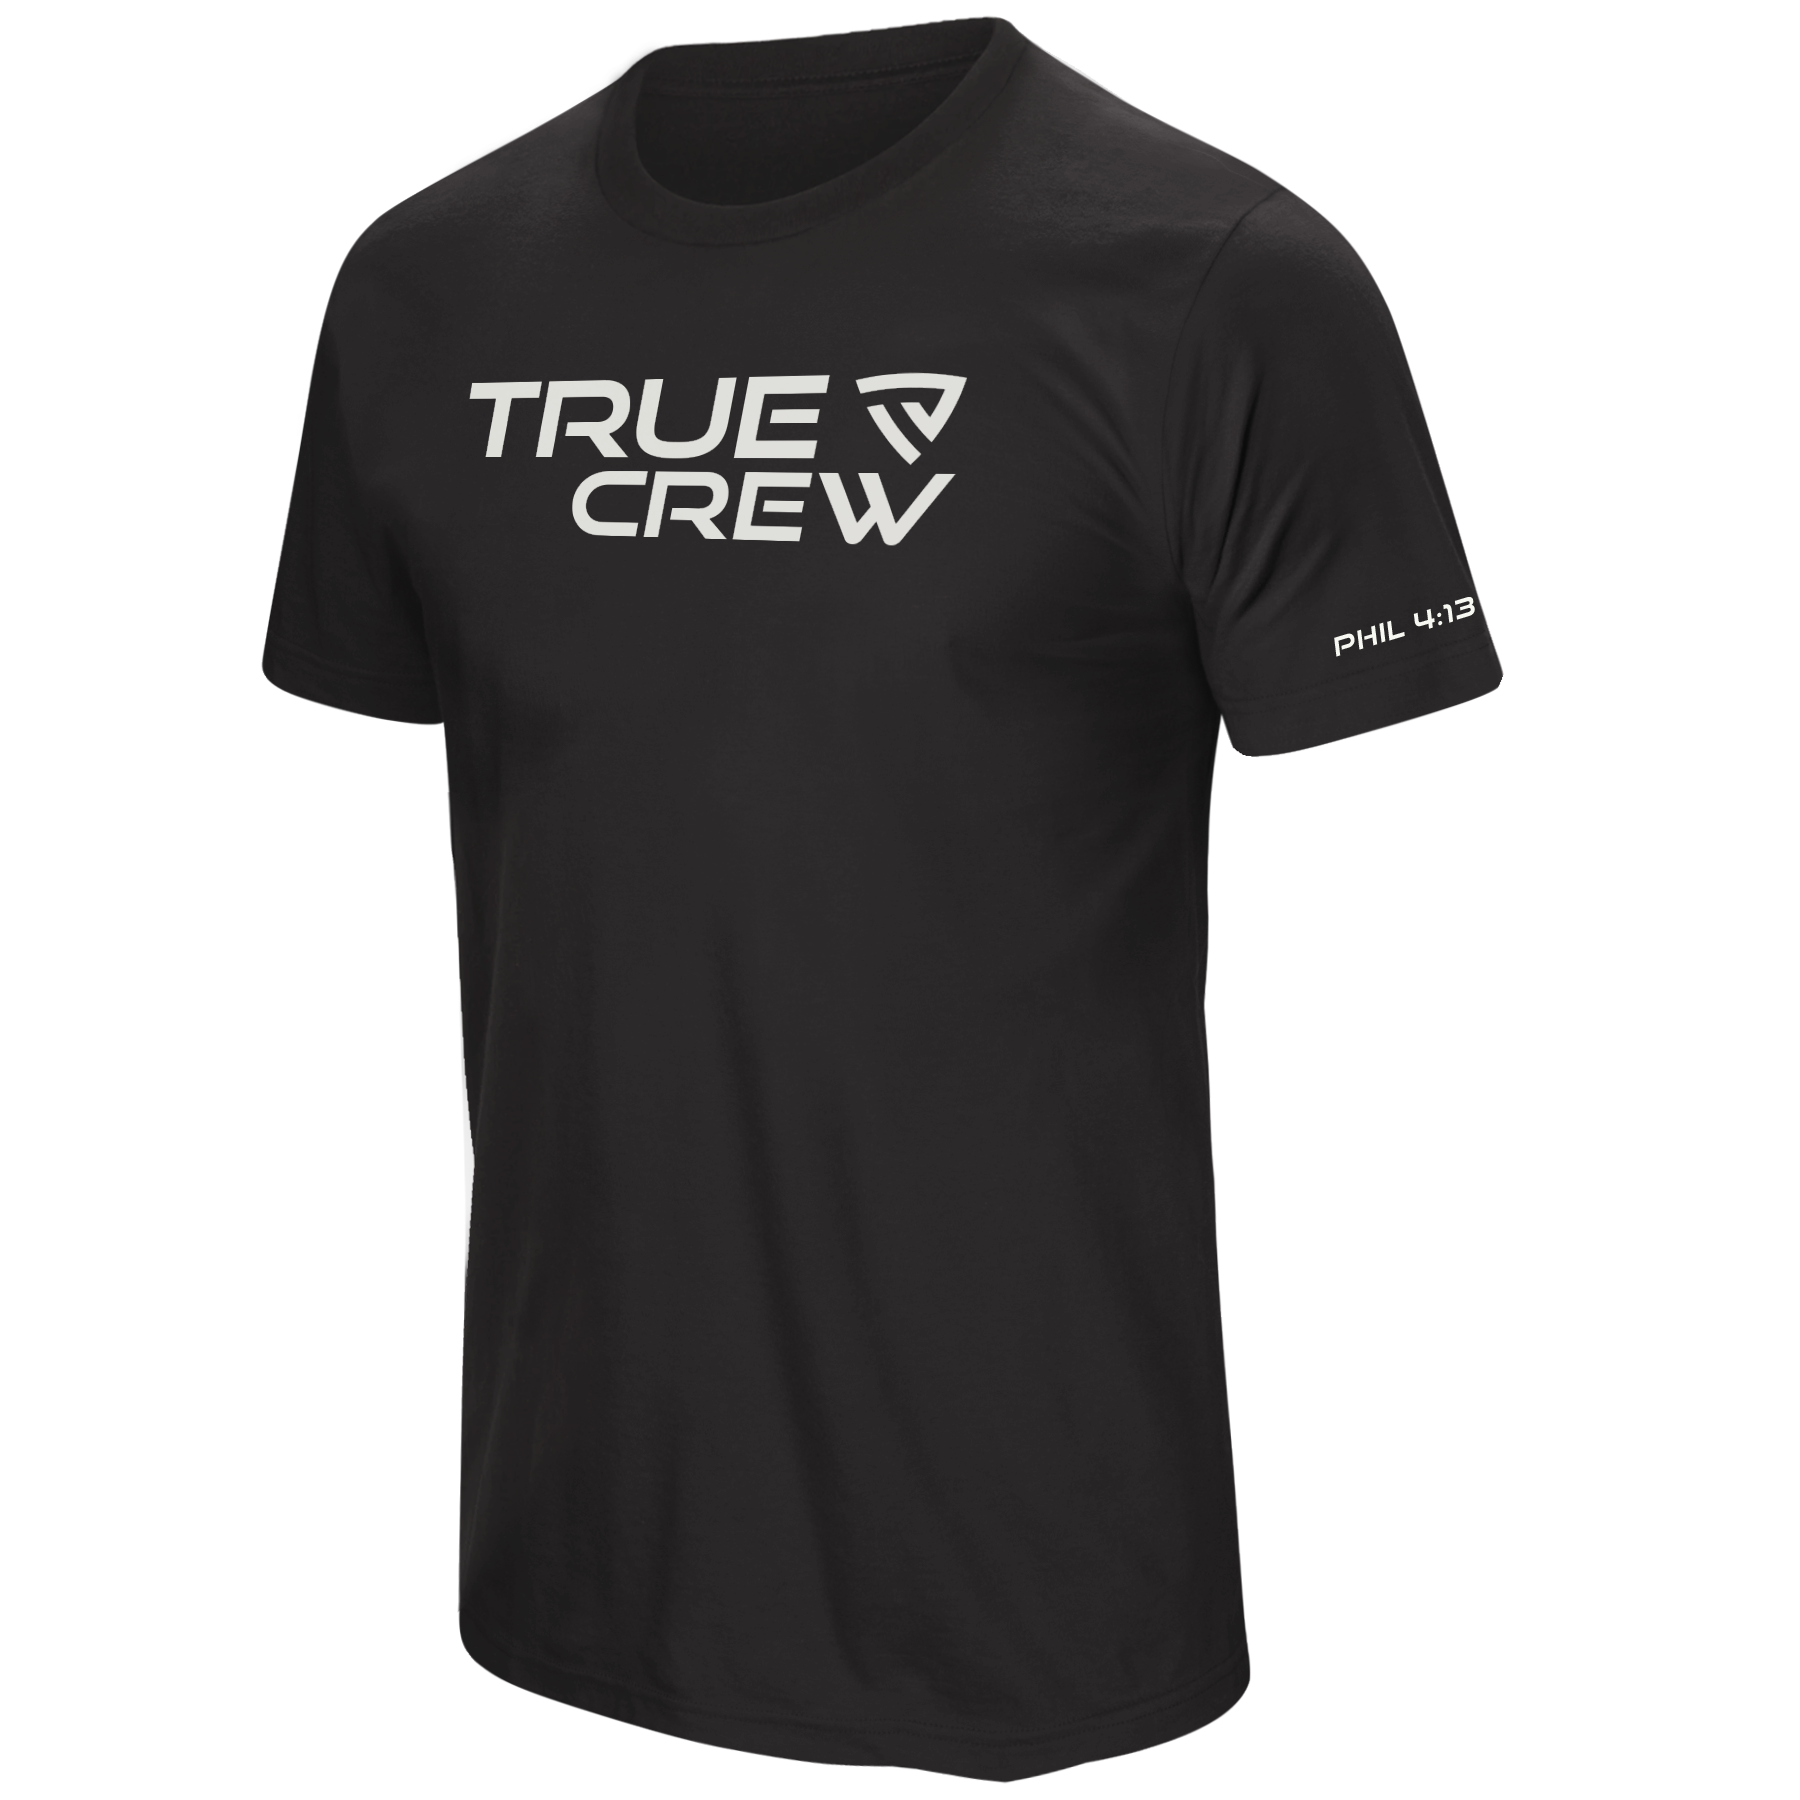 Men's True Crew Tee